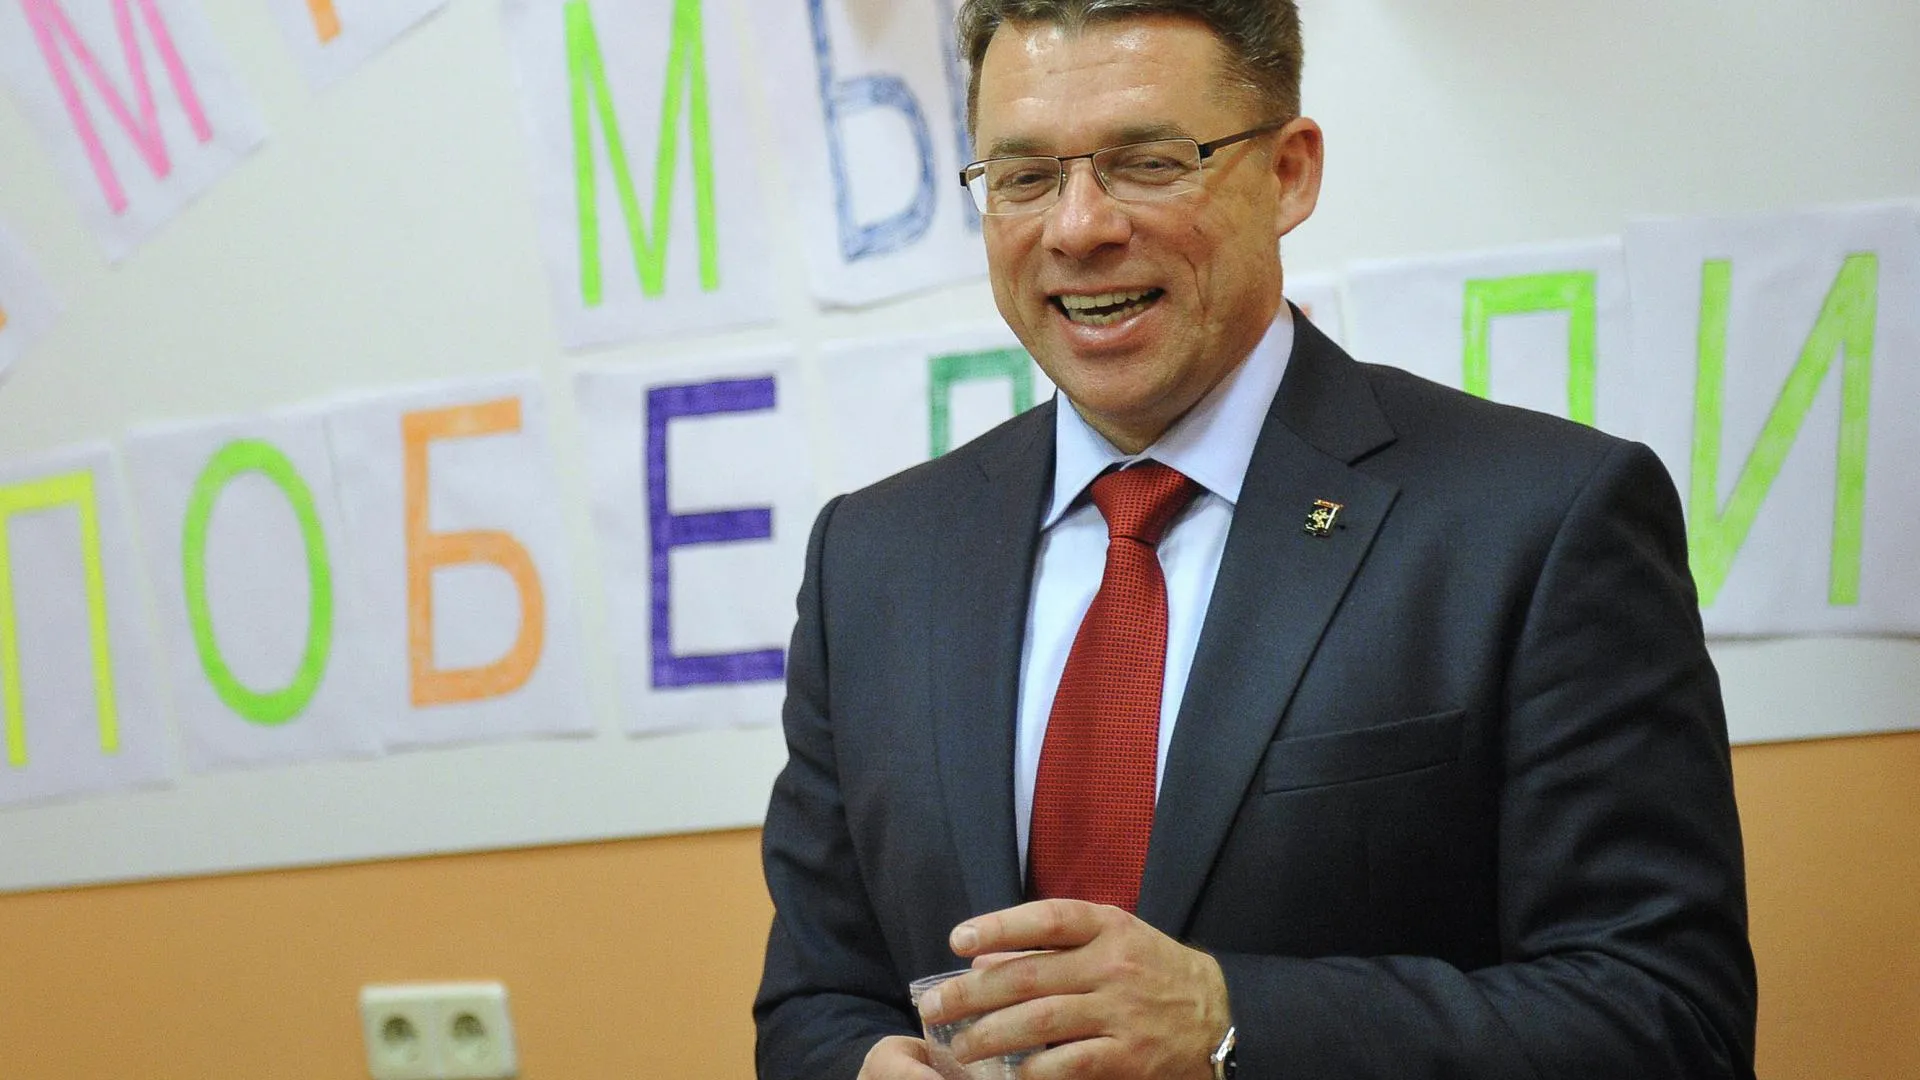 Шахов победил на выборах в Химках с 47,61% голосов — Мособлизбирком